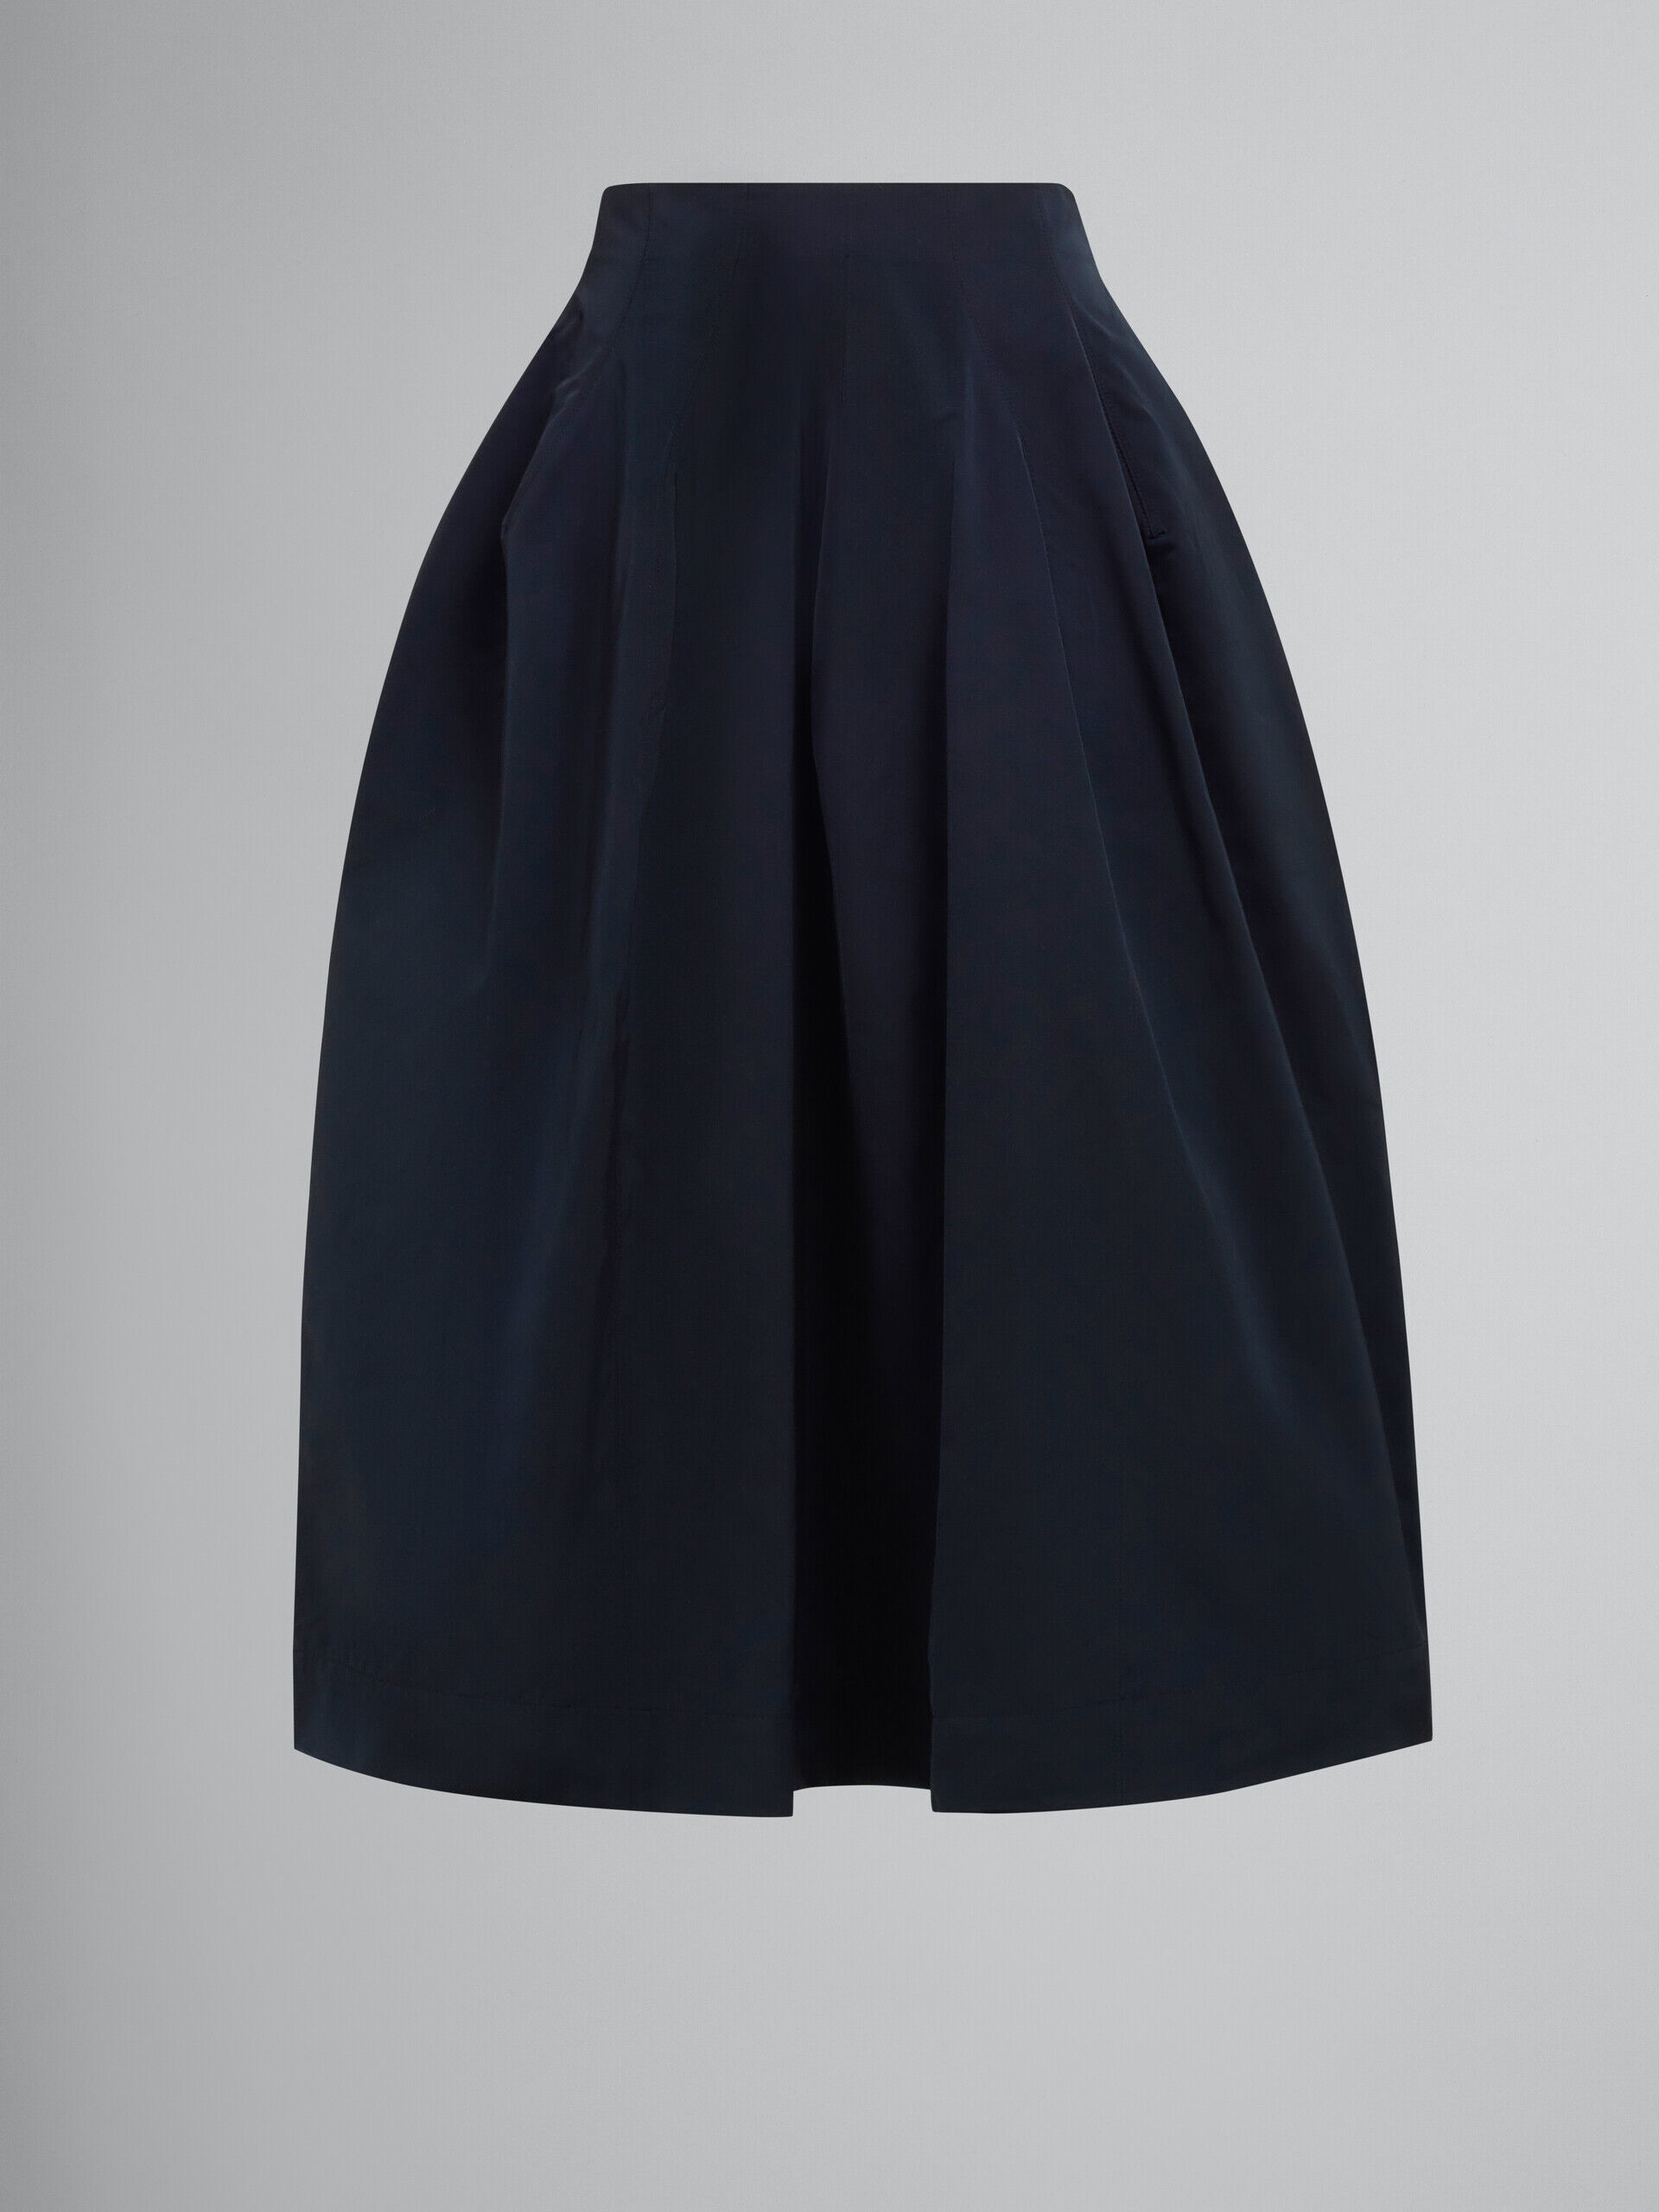 Black taffeta pleated skirt | Marni